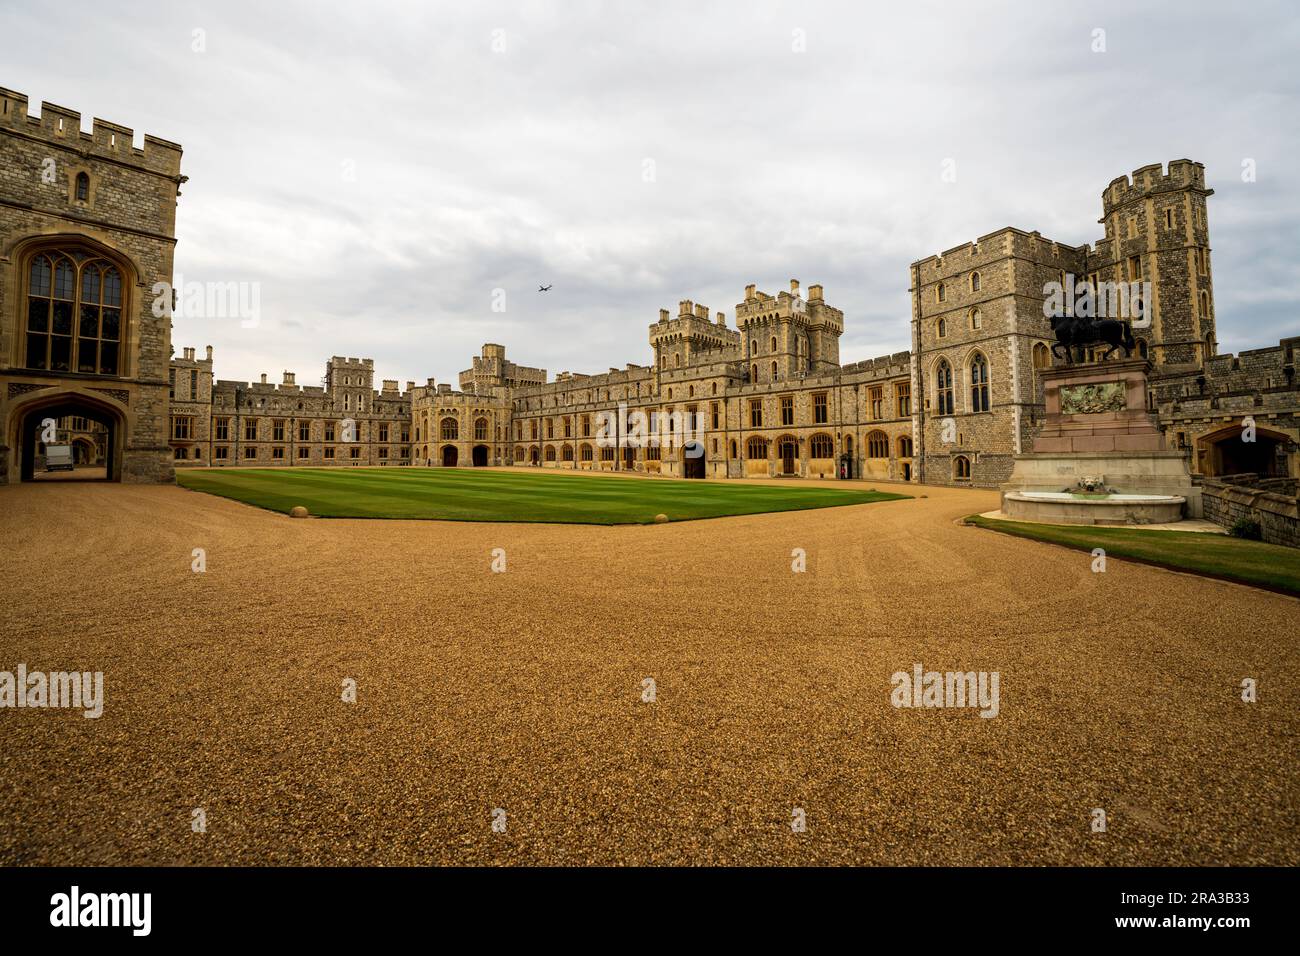 Il Castello di Windsor, una residenza reale a Windsor in Inghilterra, è il più antico e grande castello occupato al mondo e il più lungo palazzo occupato in Europa. Foto Stock